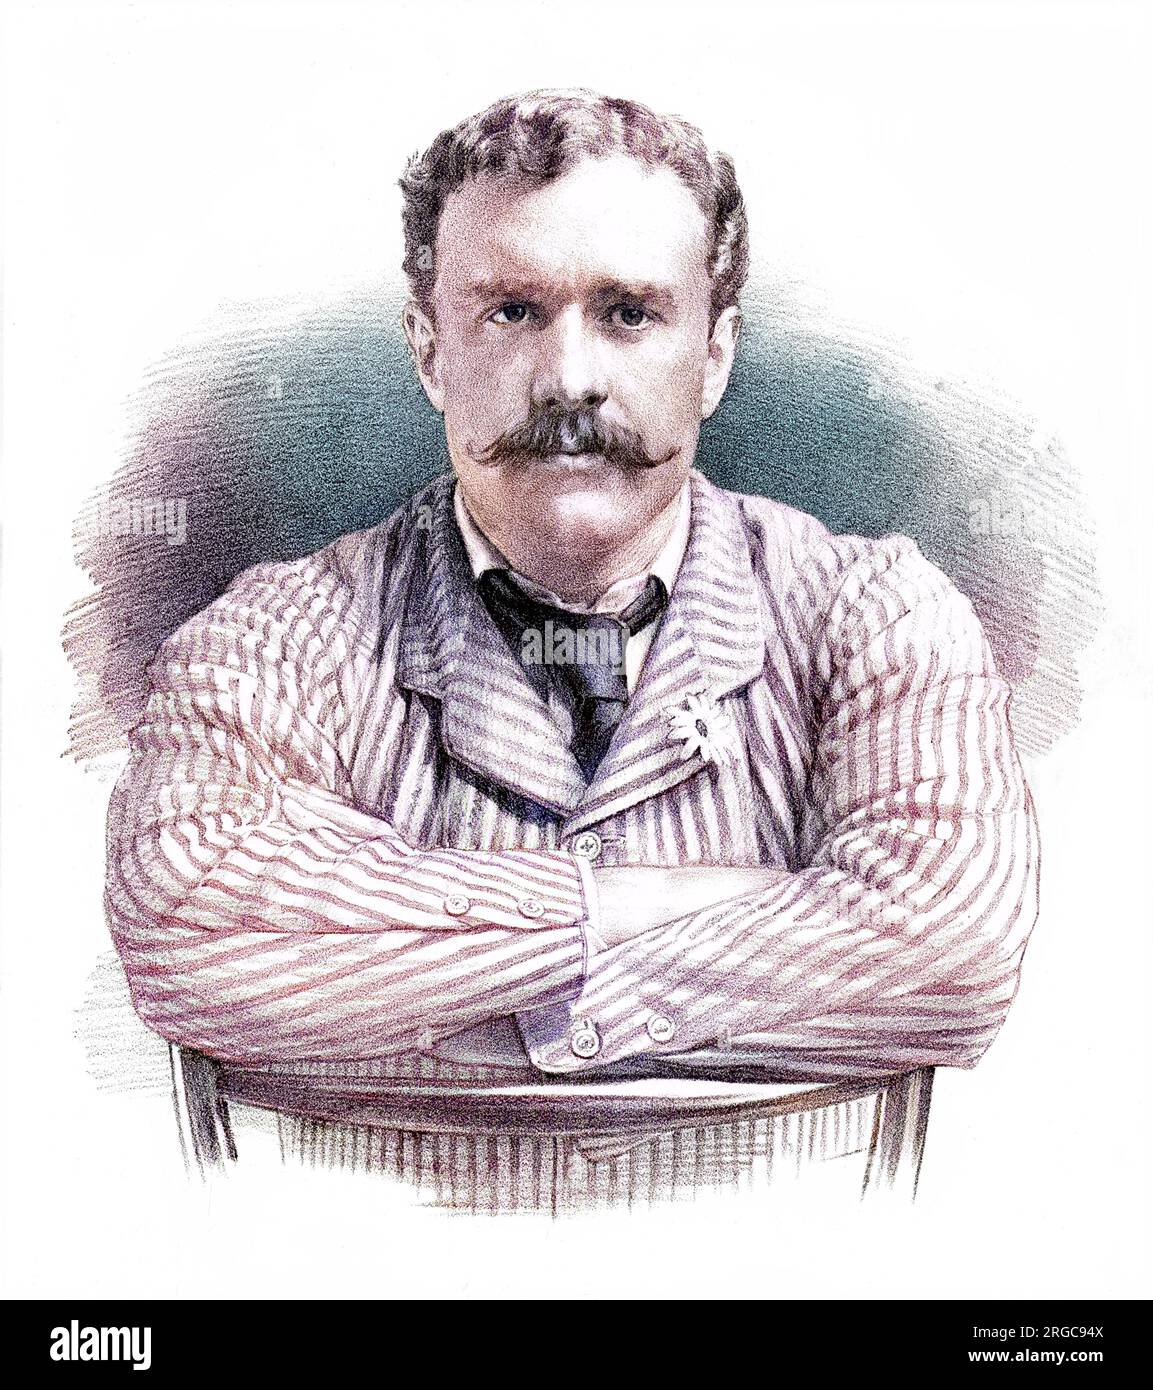 GEORGE BRIDGES HARLEY DENNETT, siebter Baron RODNEY von Rodney Stoke (1857-1909), Soldat und Sportler Stockfoto